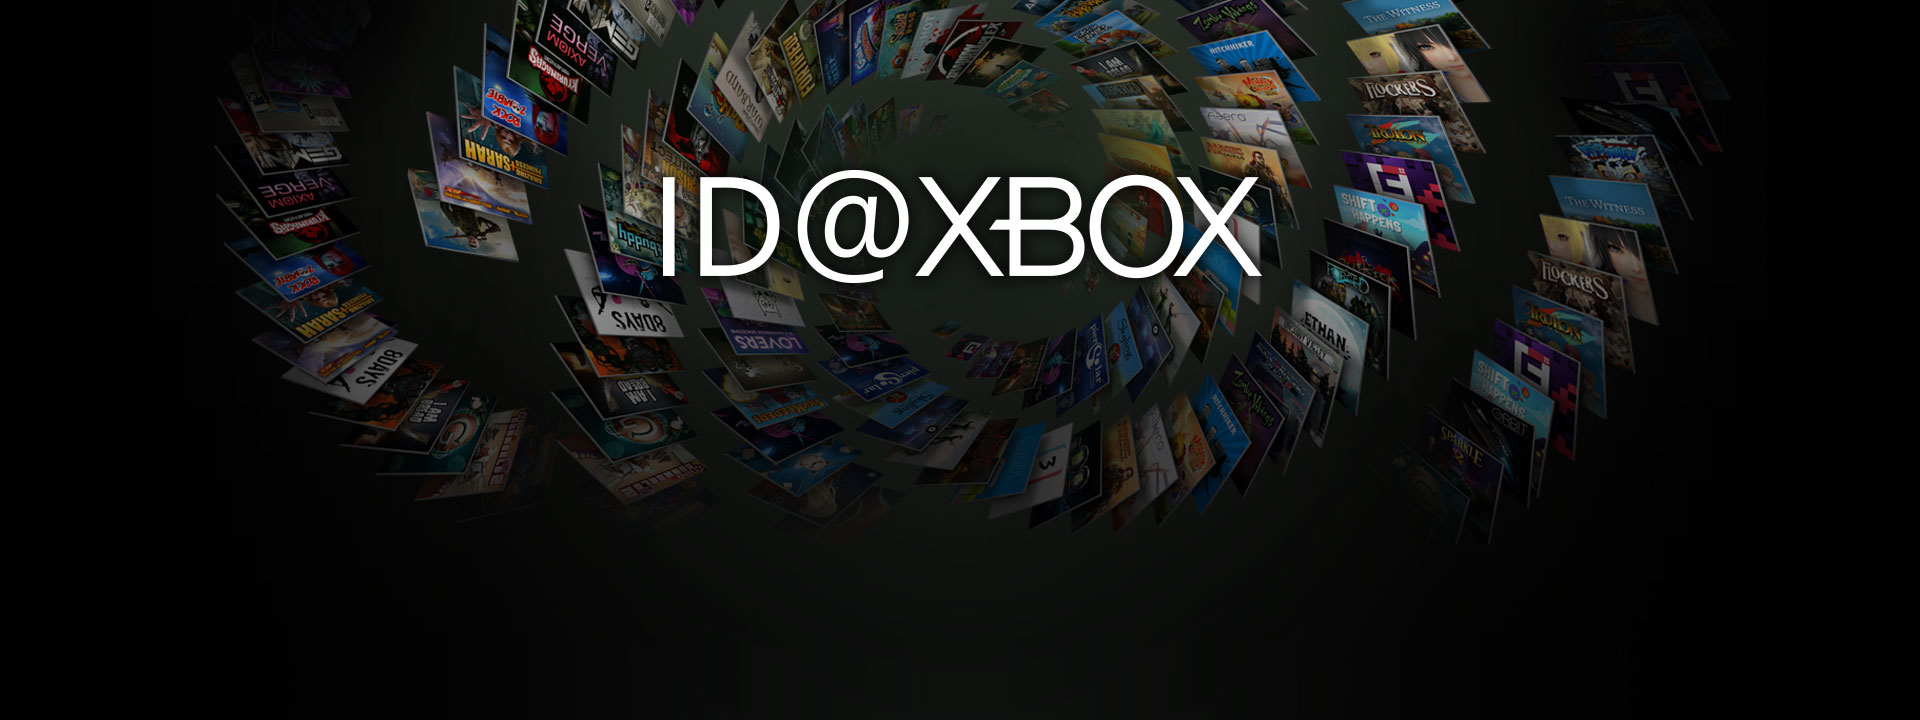 Λογότυπο ID@Xbox μπροστά από μια συλλογή box shot παιχνιδιών ID